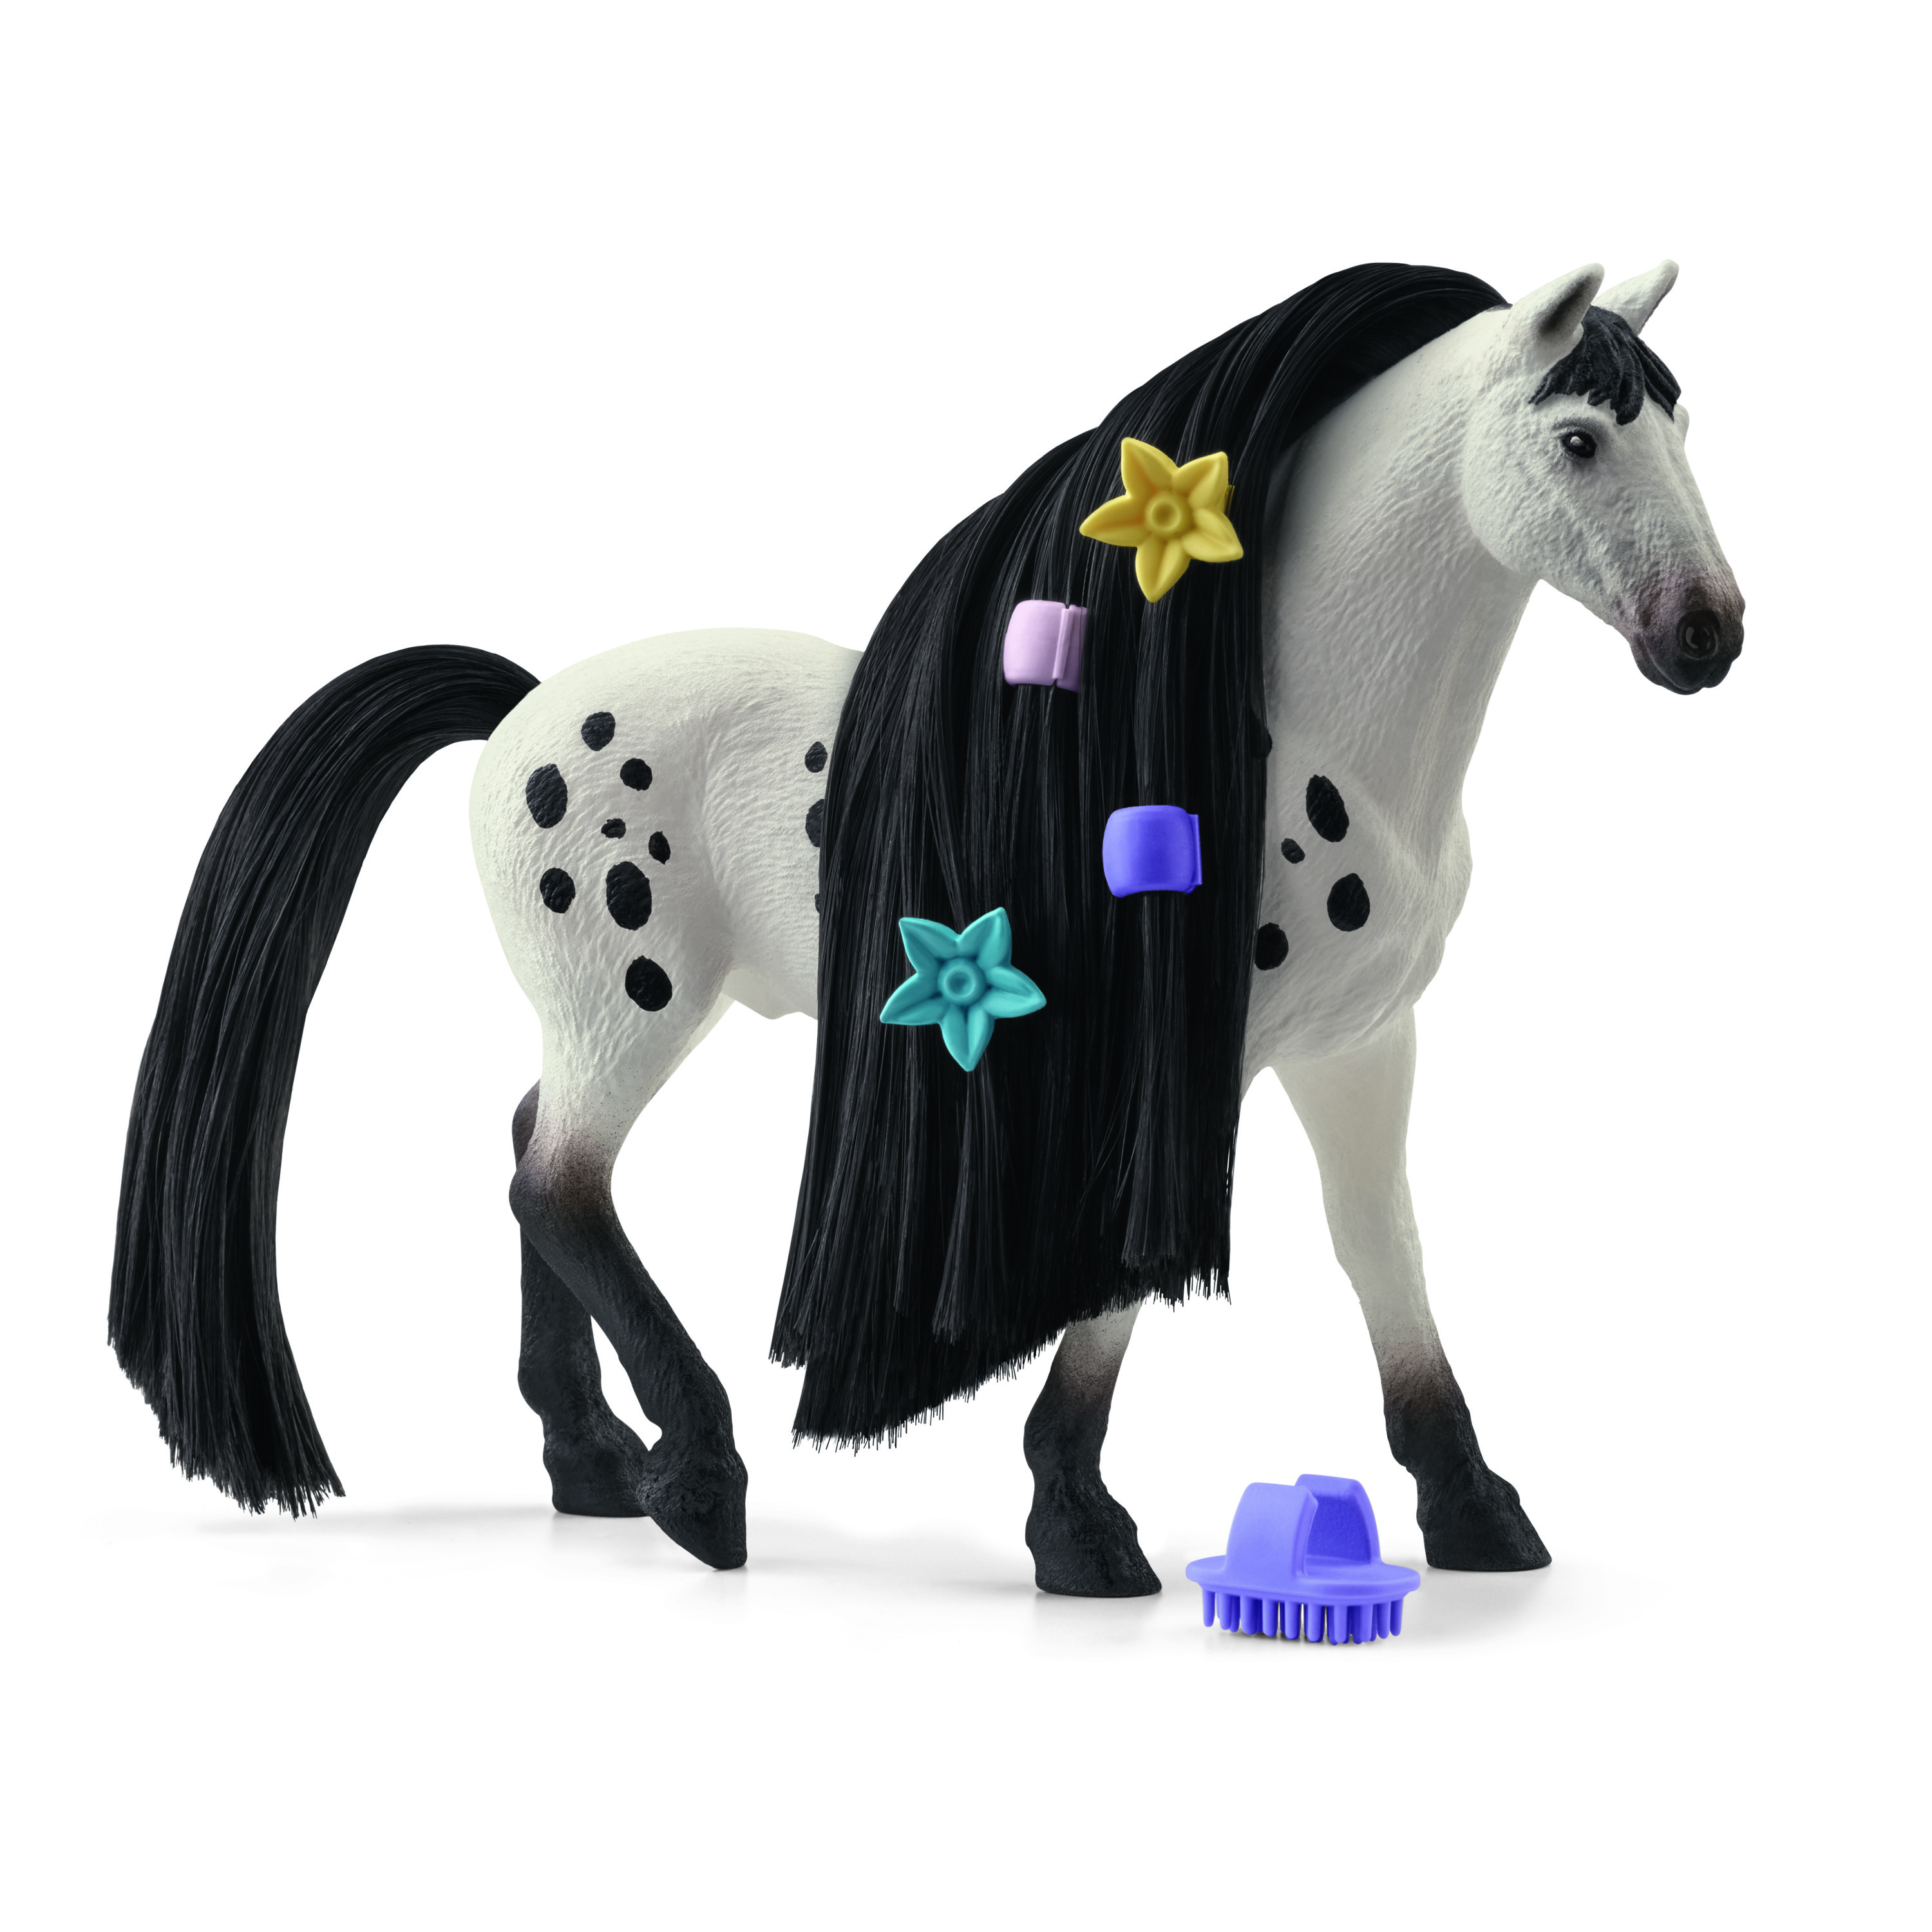 Horse Knabstrupper Sofia\'s Hengst Beauty 42622 Beauties SCHLEICH Weiß/Schwarz Spielfigur